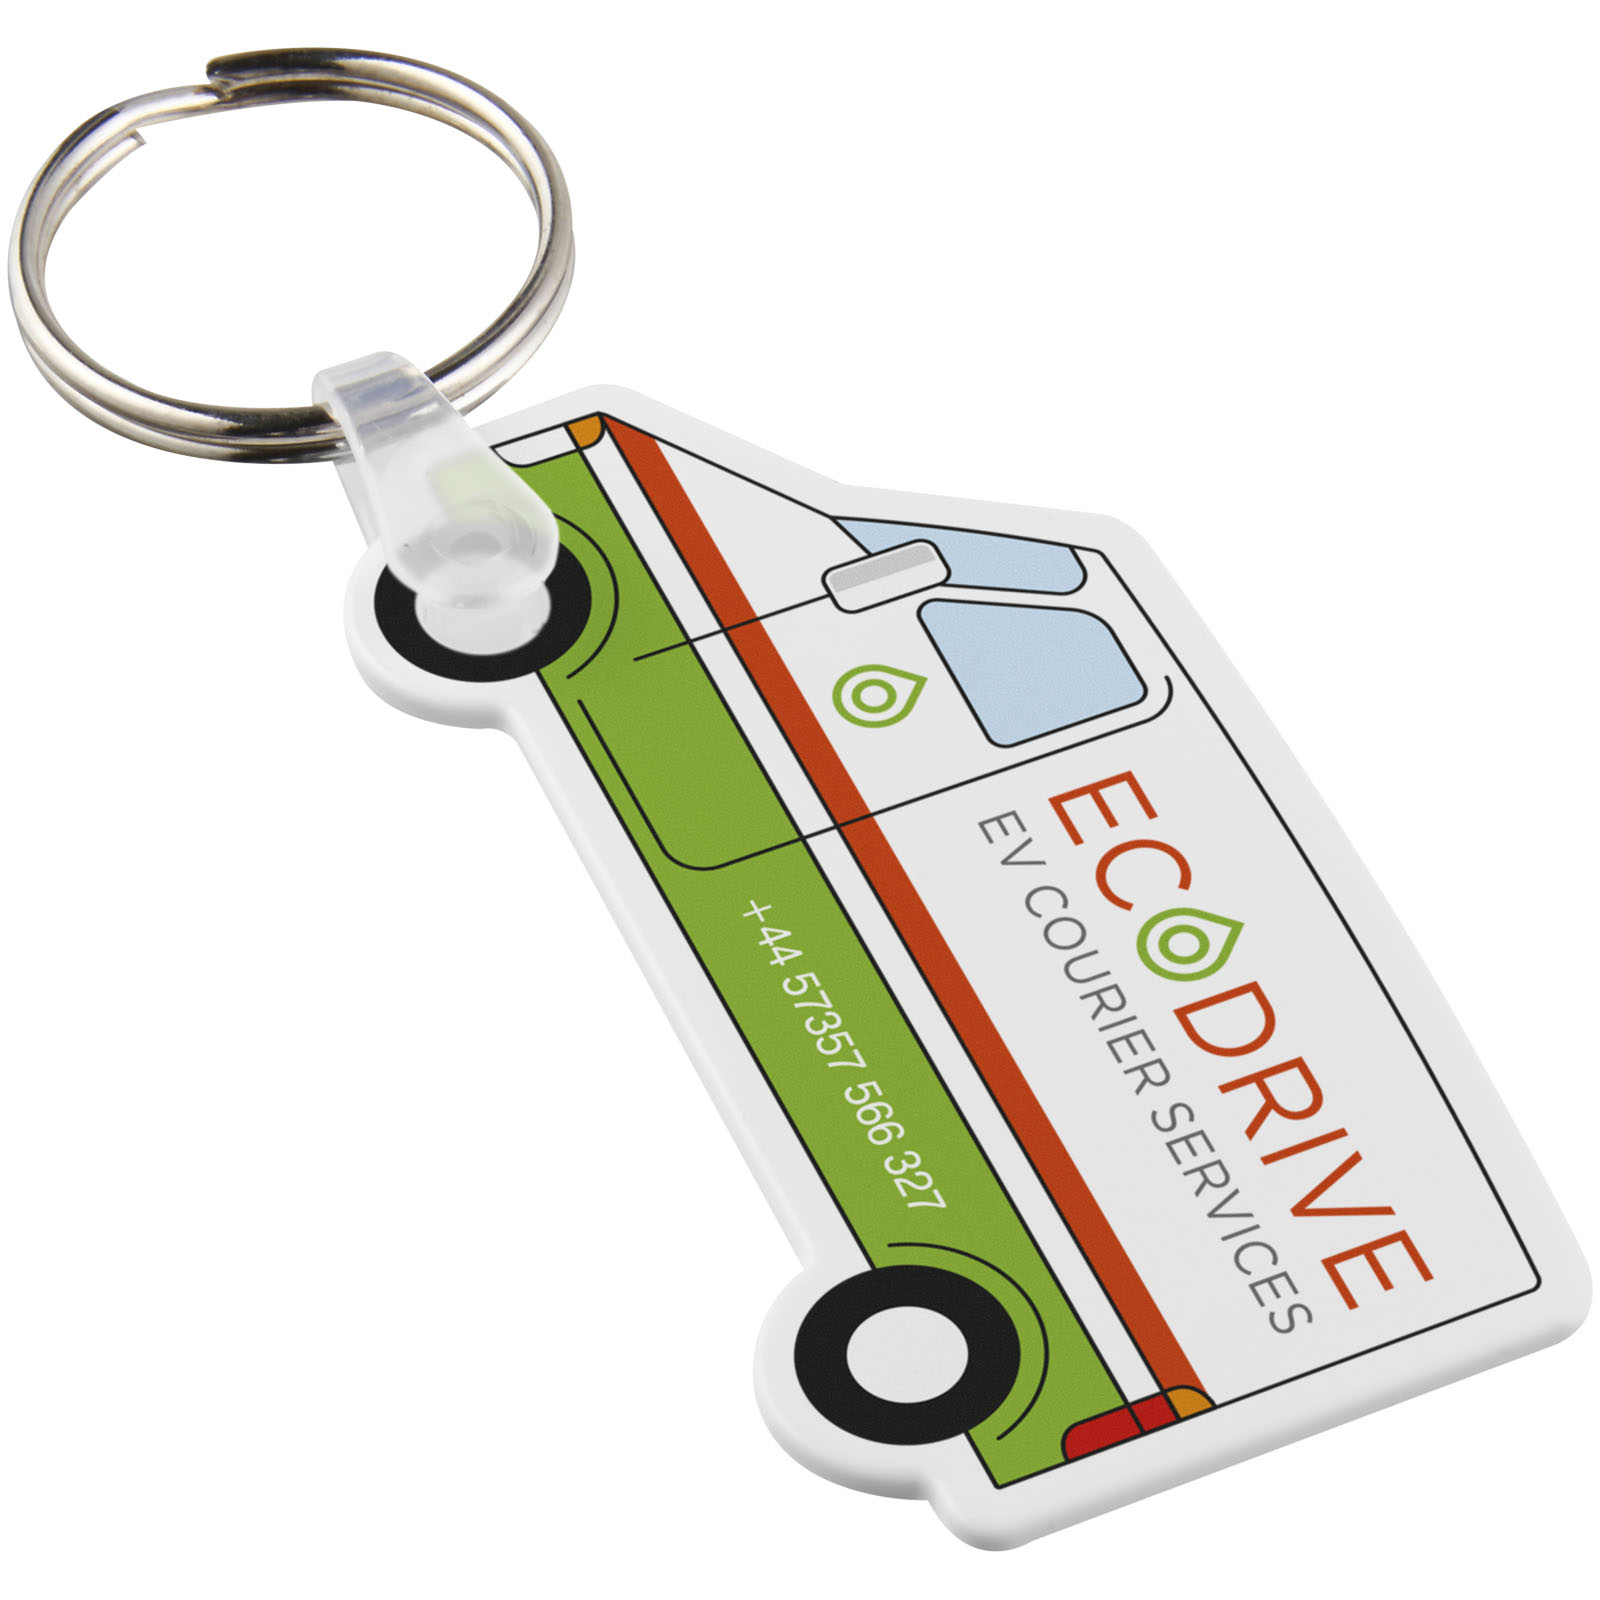 Porte-clés publicitaires - Porte-clés recyclé Tait en forme de minibus